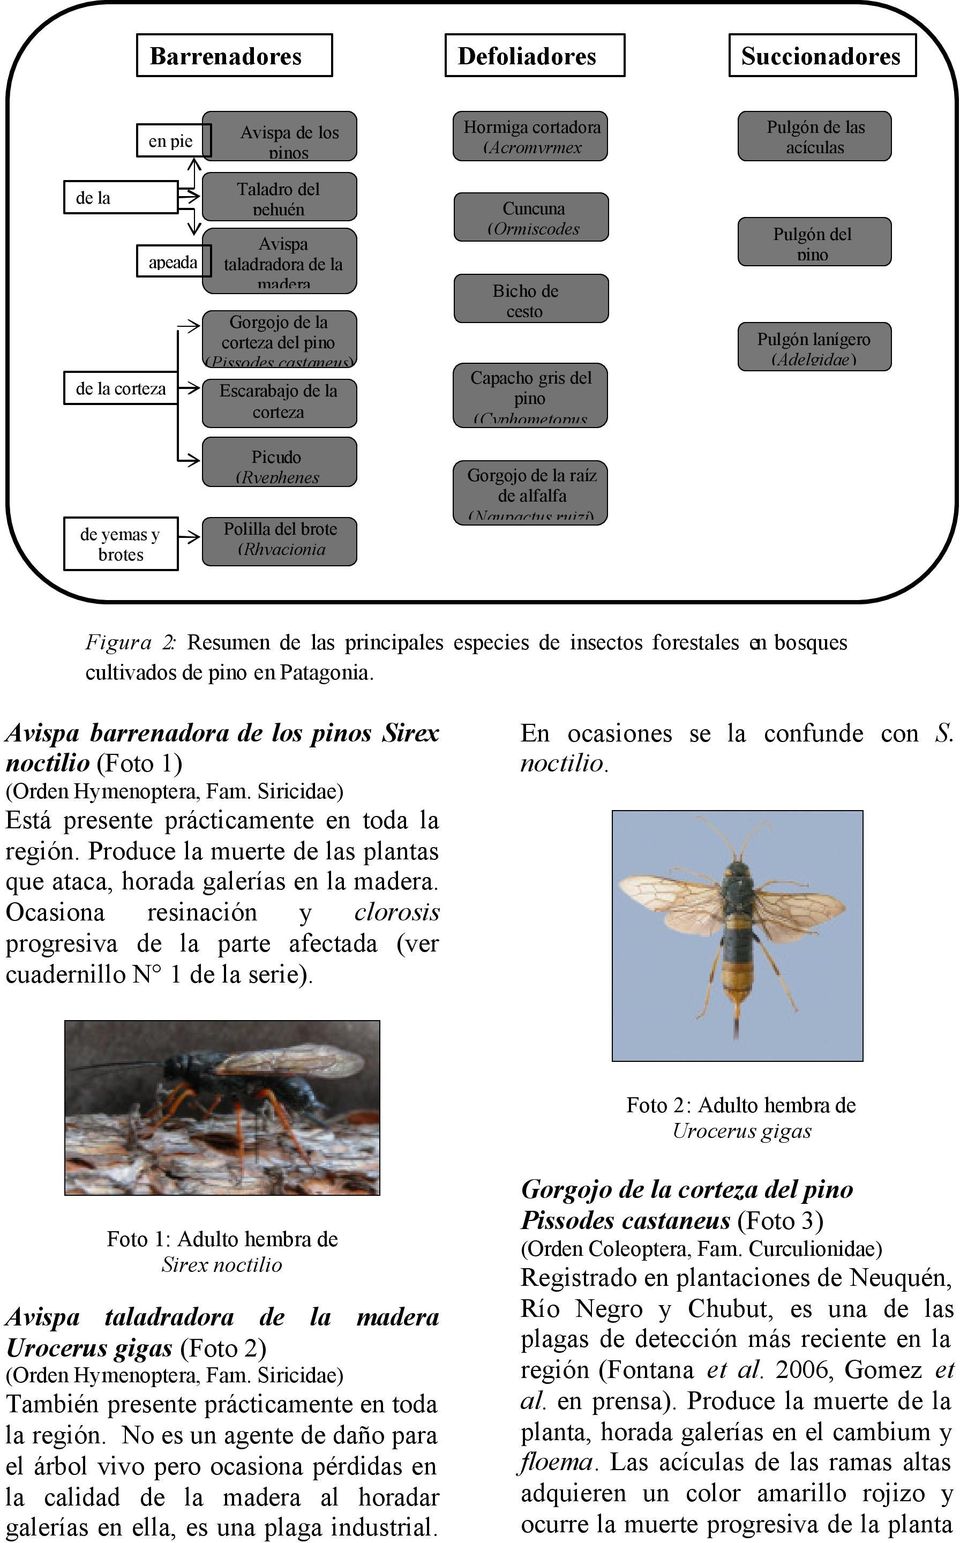 yemas y brotes Picudo (Ryephenes Polilla del brote (Rhyacionia Gorgojo de la raíz de alfalfa (Naupactus ruizi) Figura 2: Resumen de las principales especies de insectos forestales en bosques